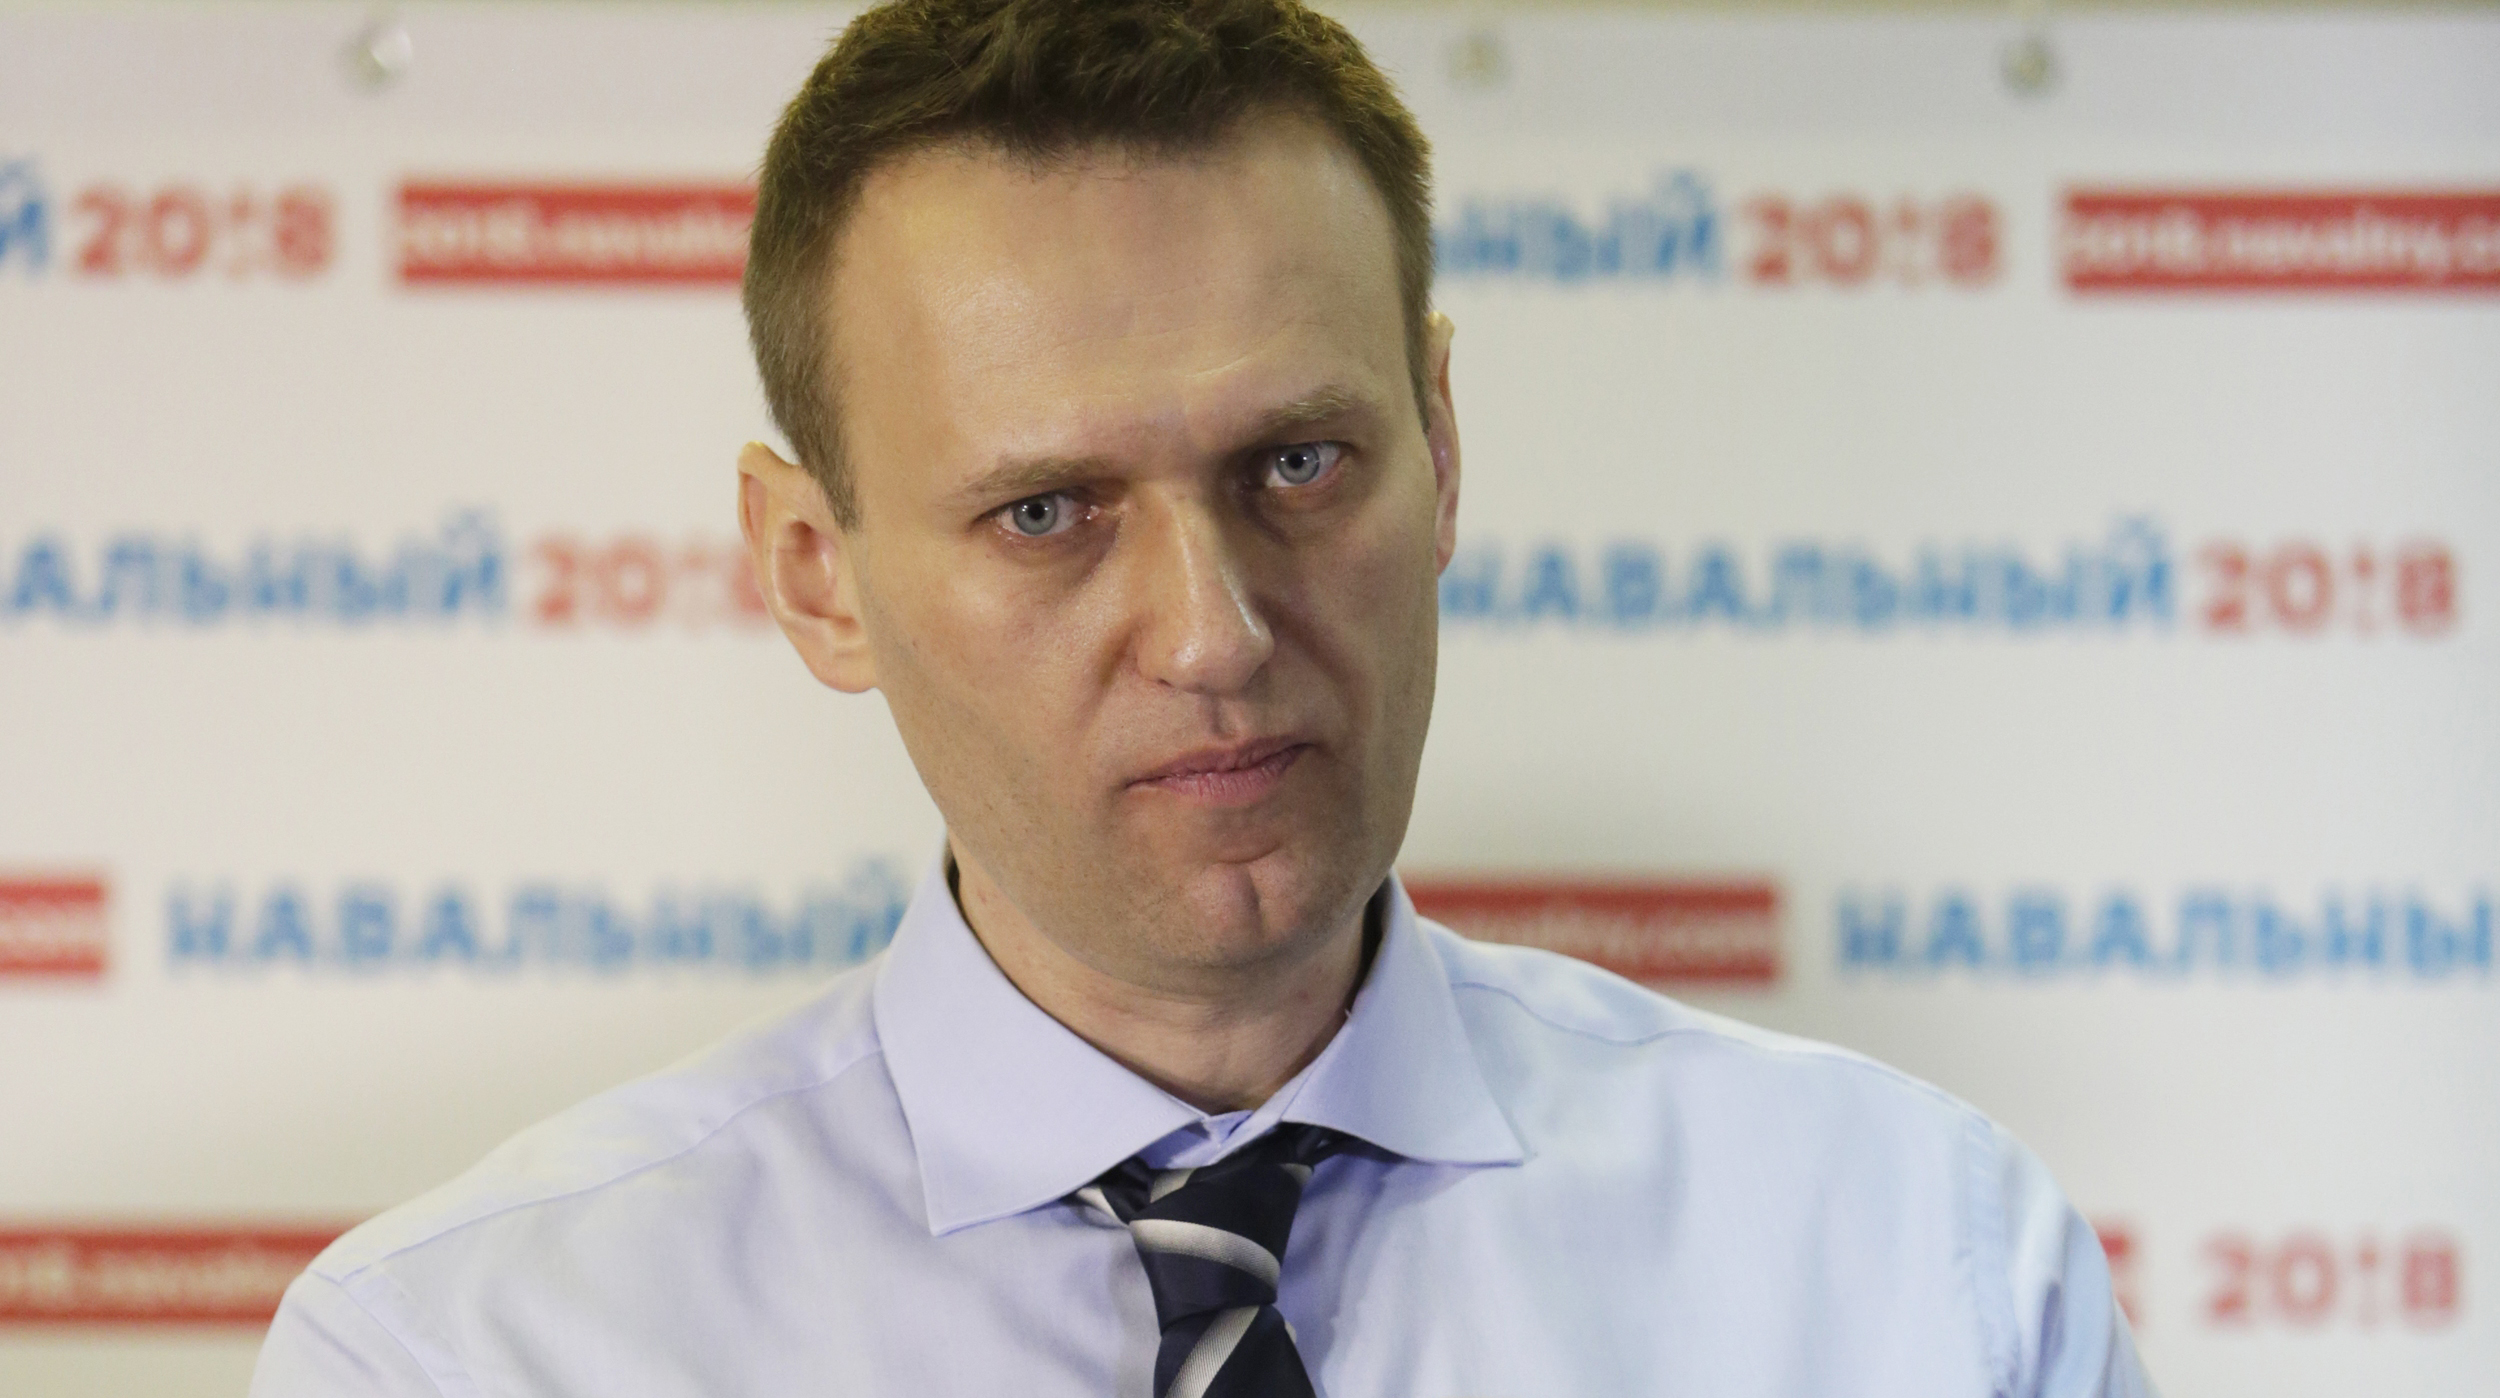 Бывший сотрудник штаба Навального Александр Туровский предупредил сторонников оппозиции, что проплаченные люди будут провоцировать полицию «по схеме 6 мая» undefined